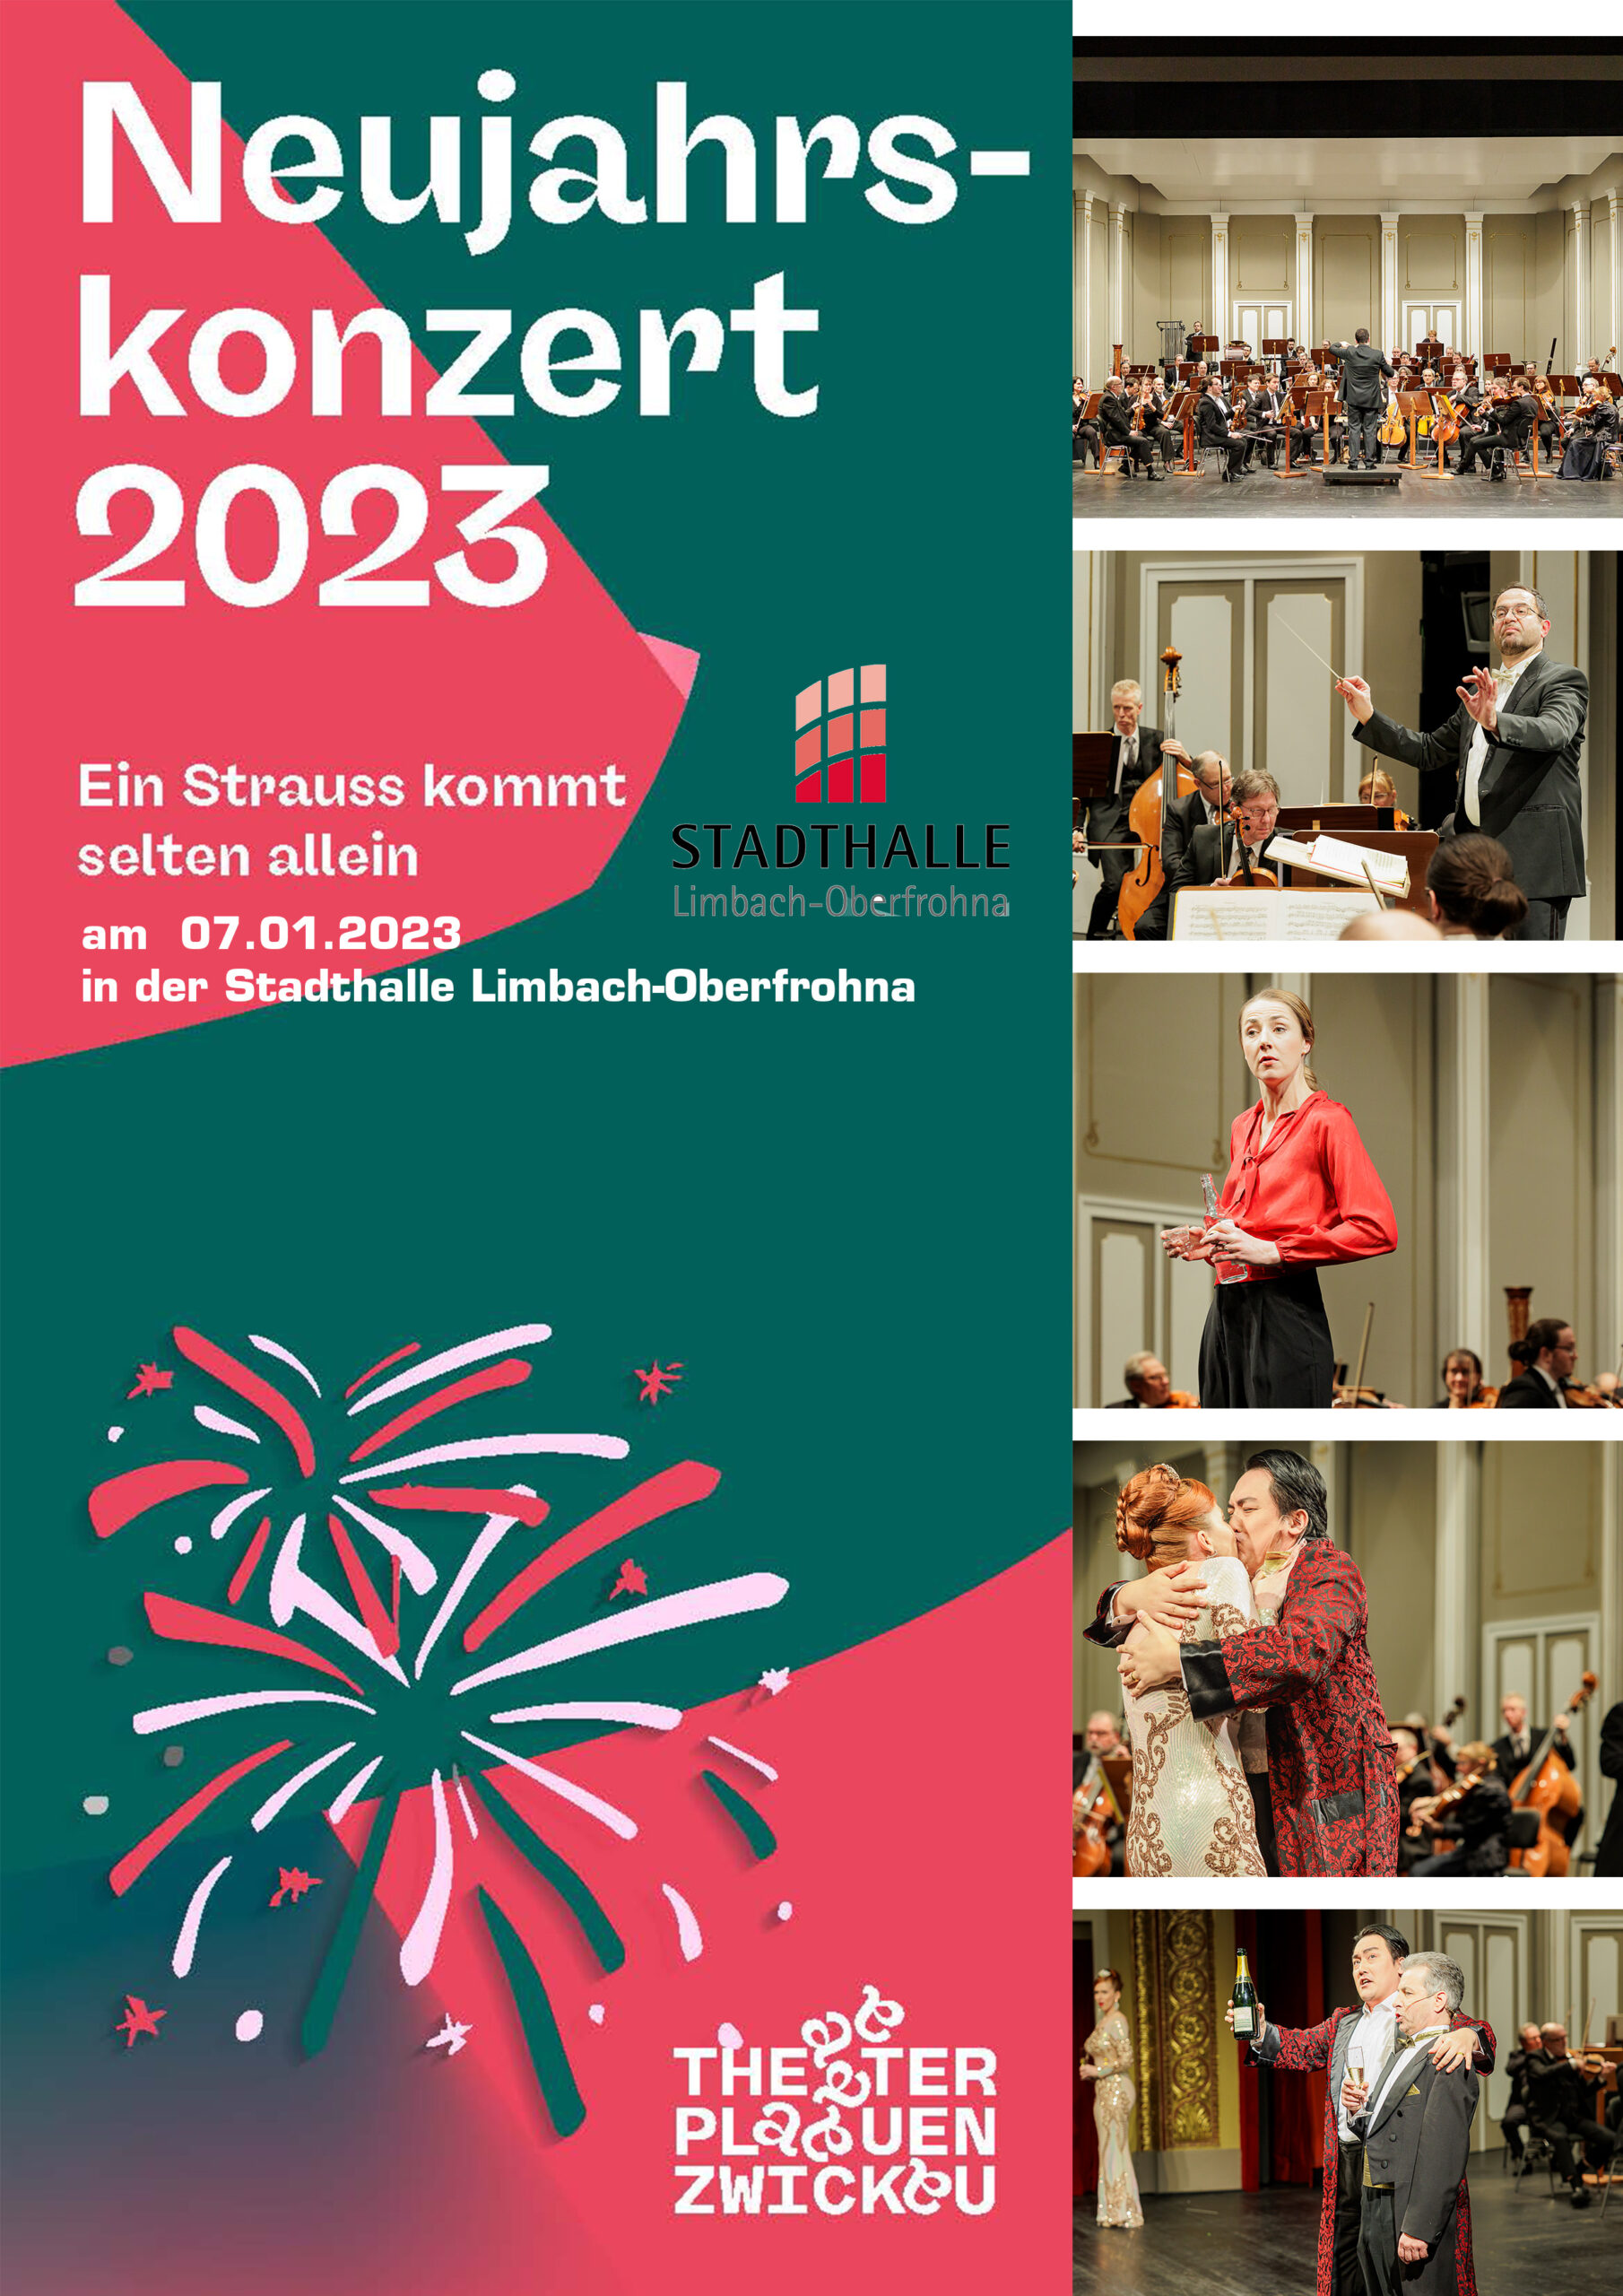 Neujahrskonzert 2023 – Ein Strauss kommt selten allein